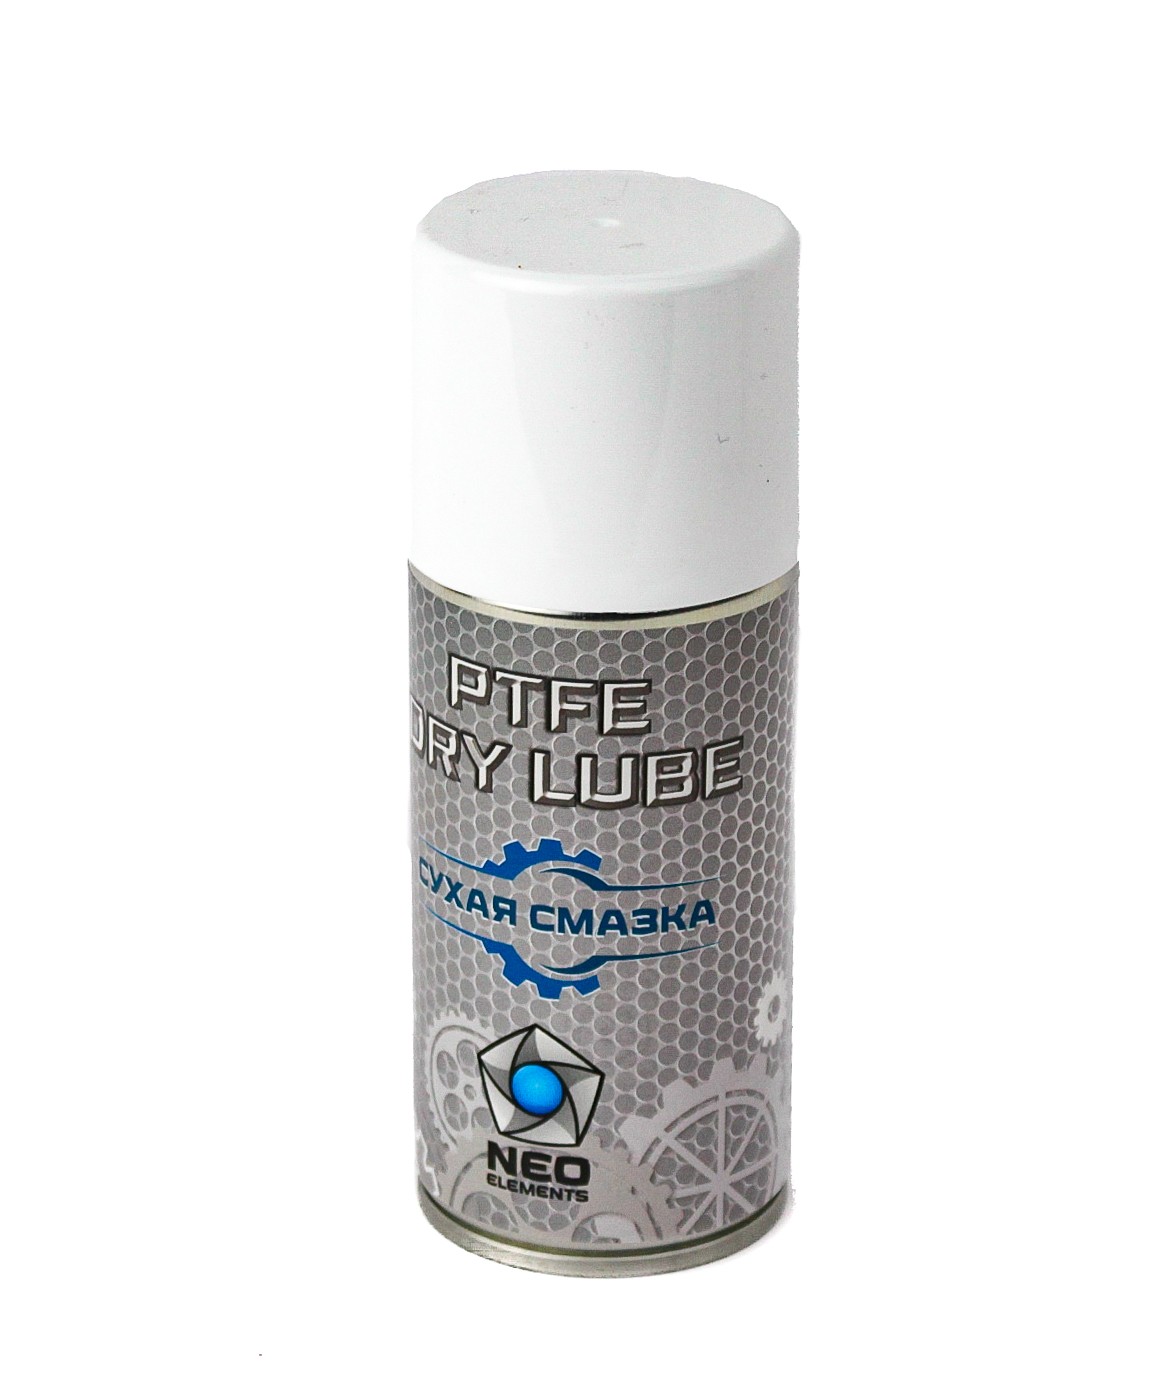 Смазка Neo Elements PTFE Dry lube сухая 210мл - фото 1